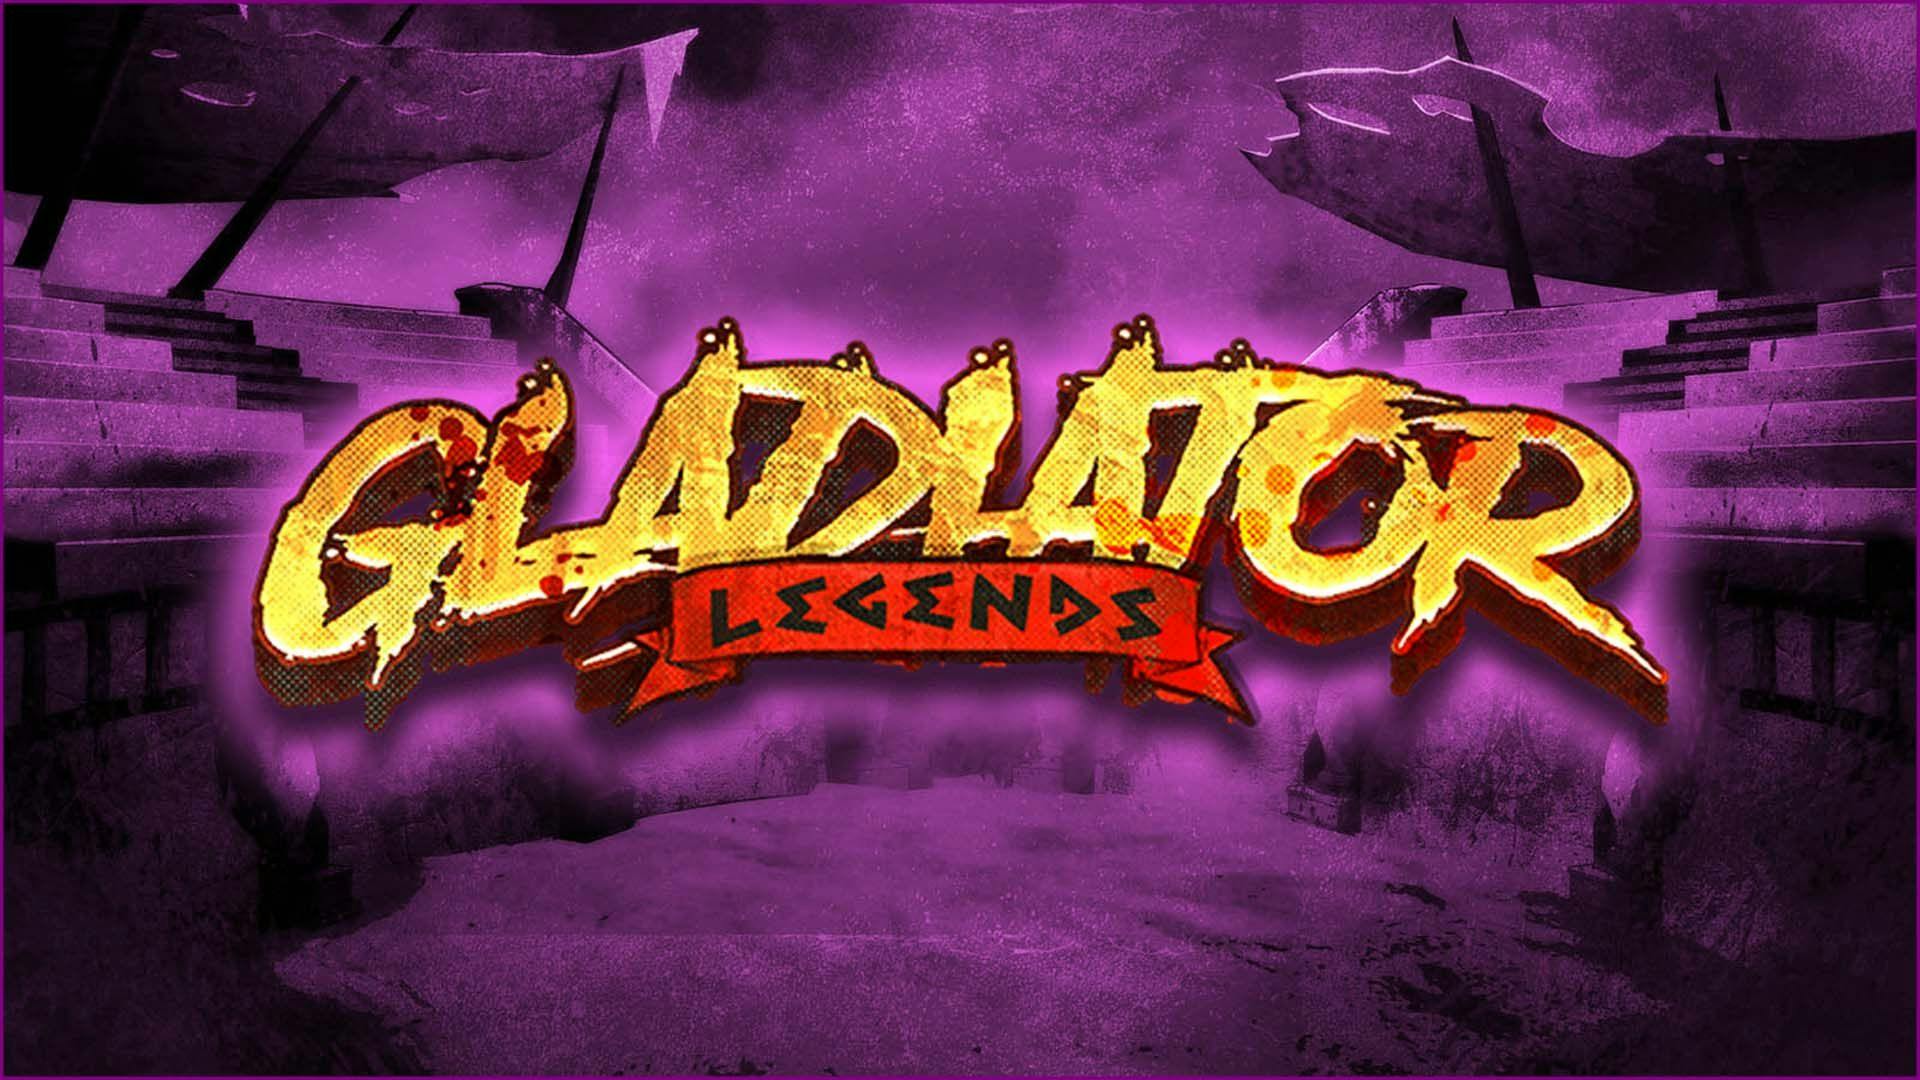 Gladiator legends slot